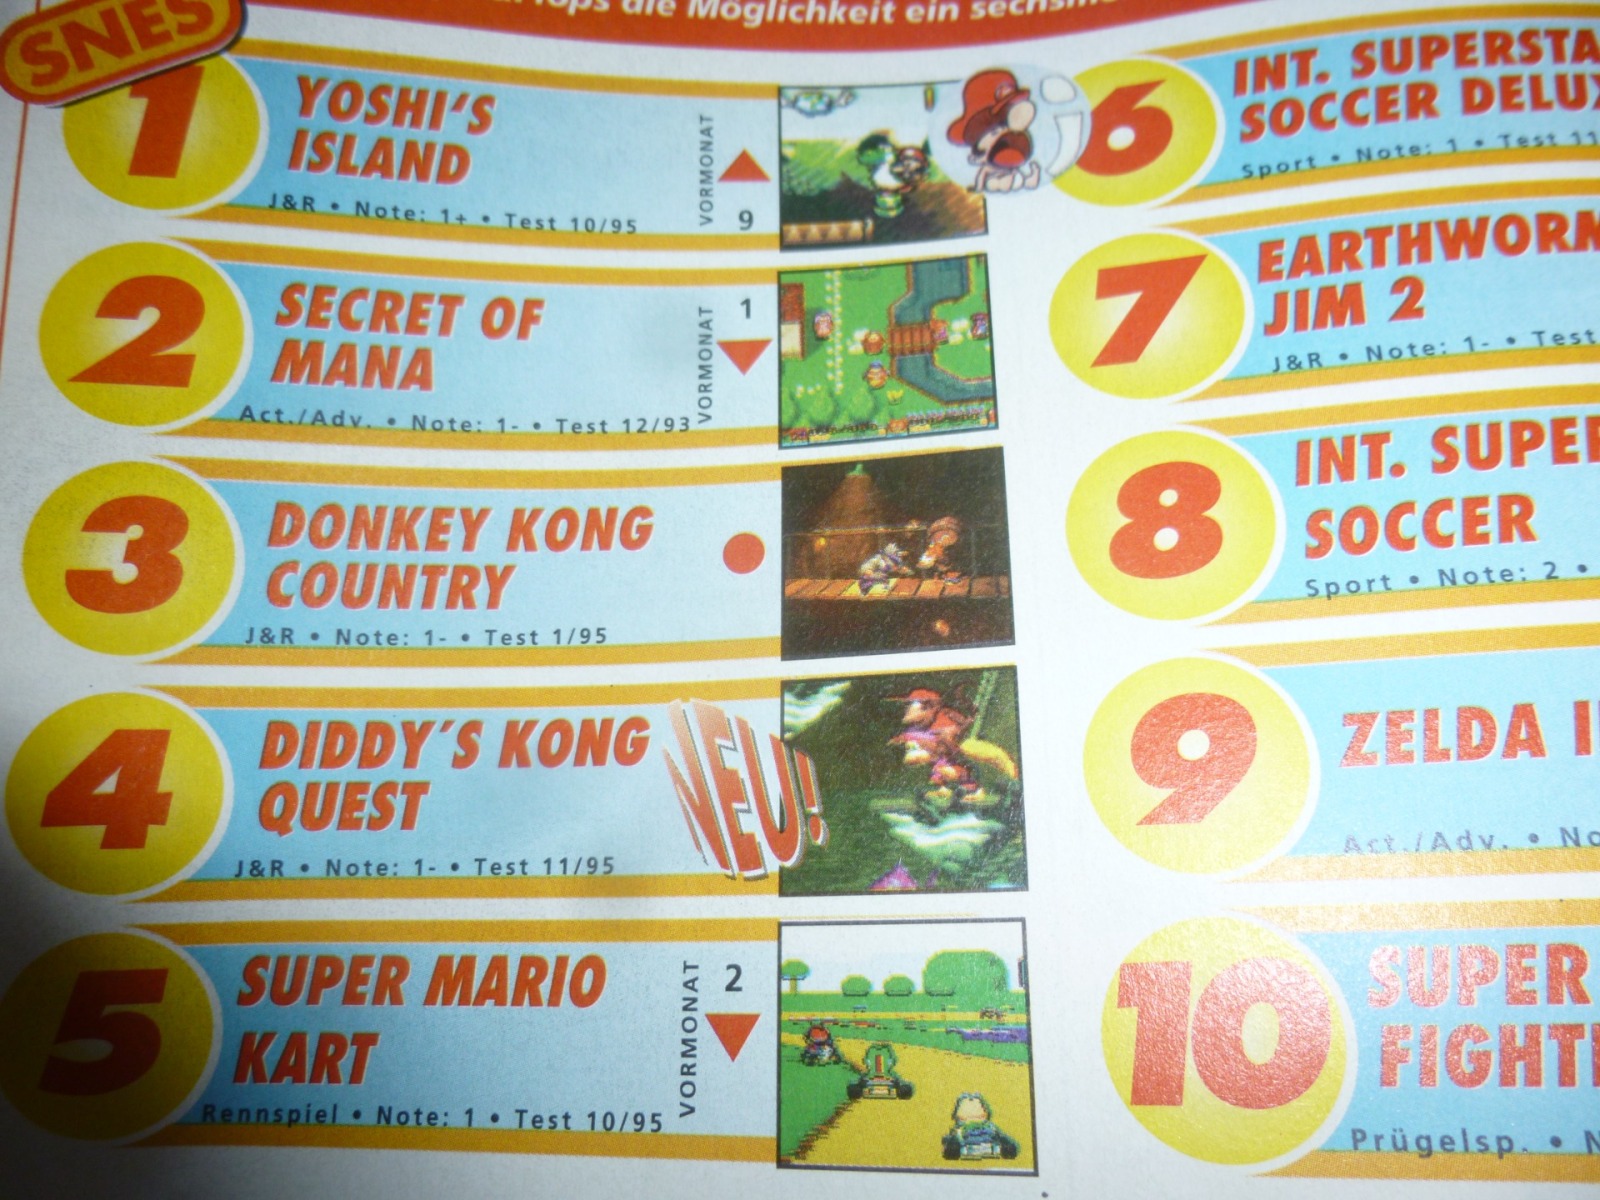 TOTAL Das unabhängige Magazin - 100 Nintendo - Ausgabe 3/96 1996 17